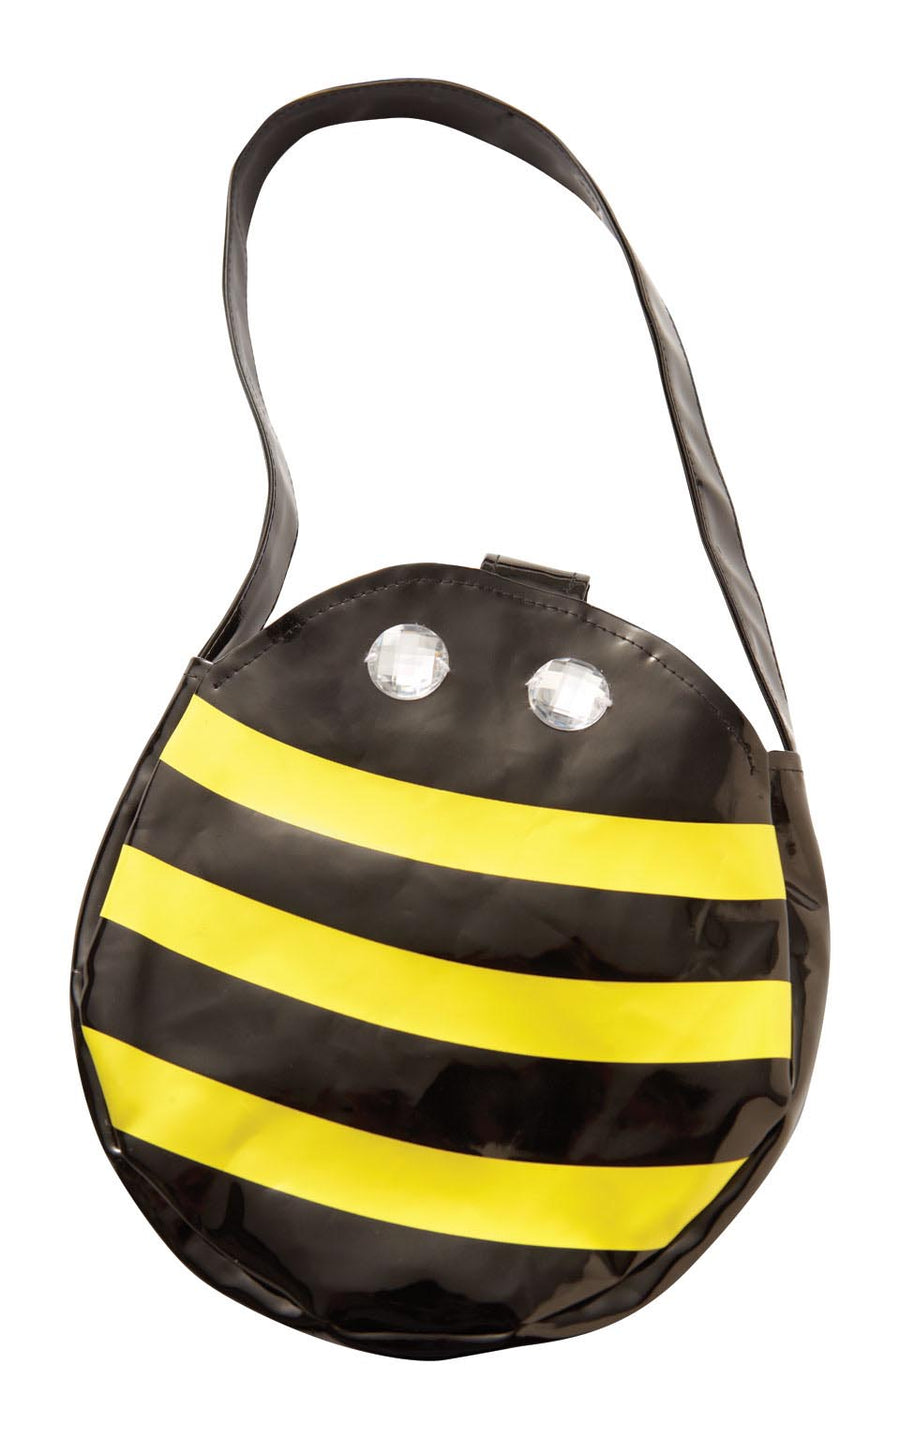 Bumble Bee Bag_1